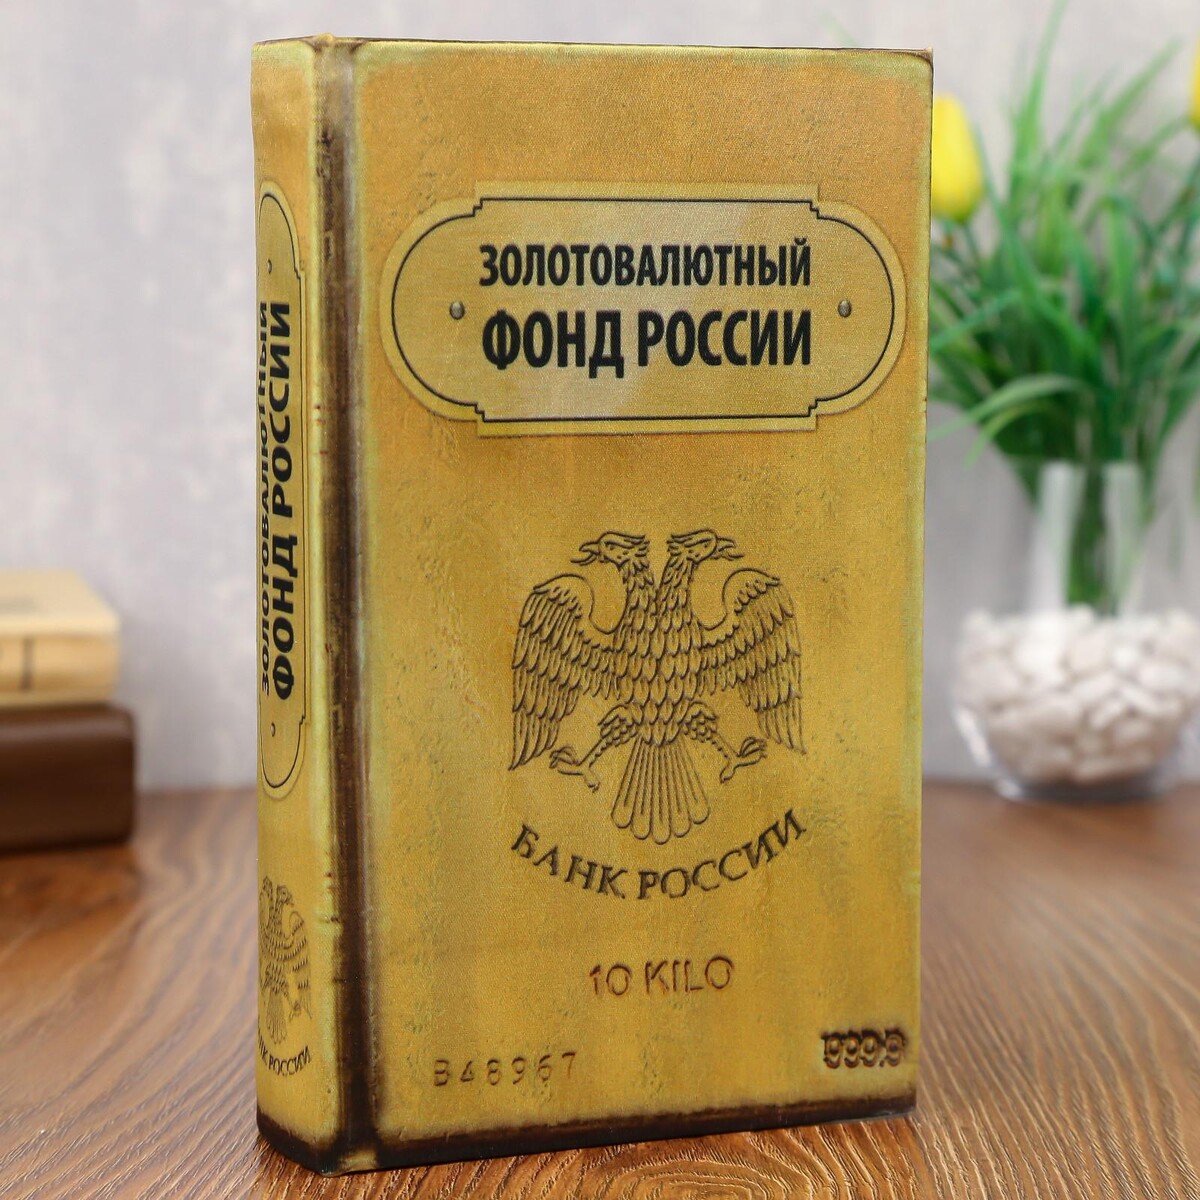 Сейф дерево книга золотовалютный фонд россии 21*13*5 см книга сейф золотовалютный фонд россии sima land